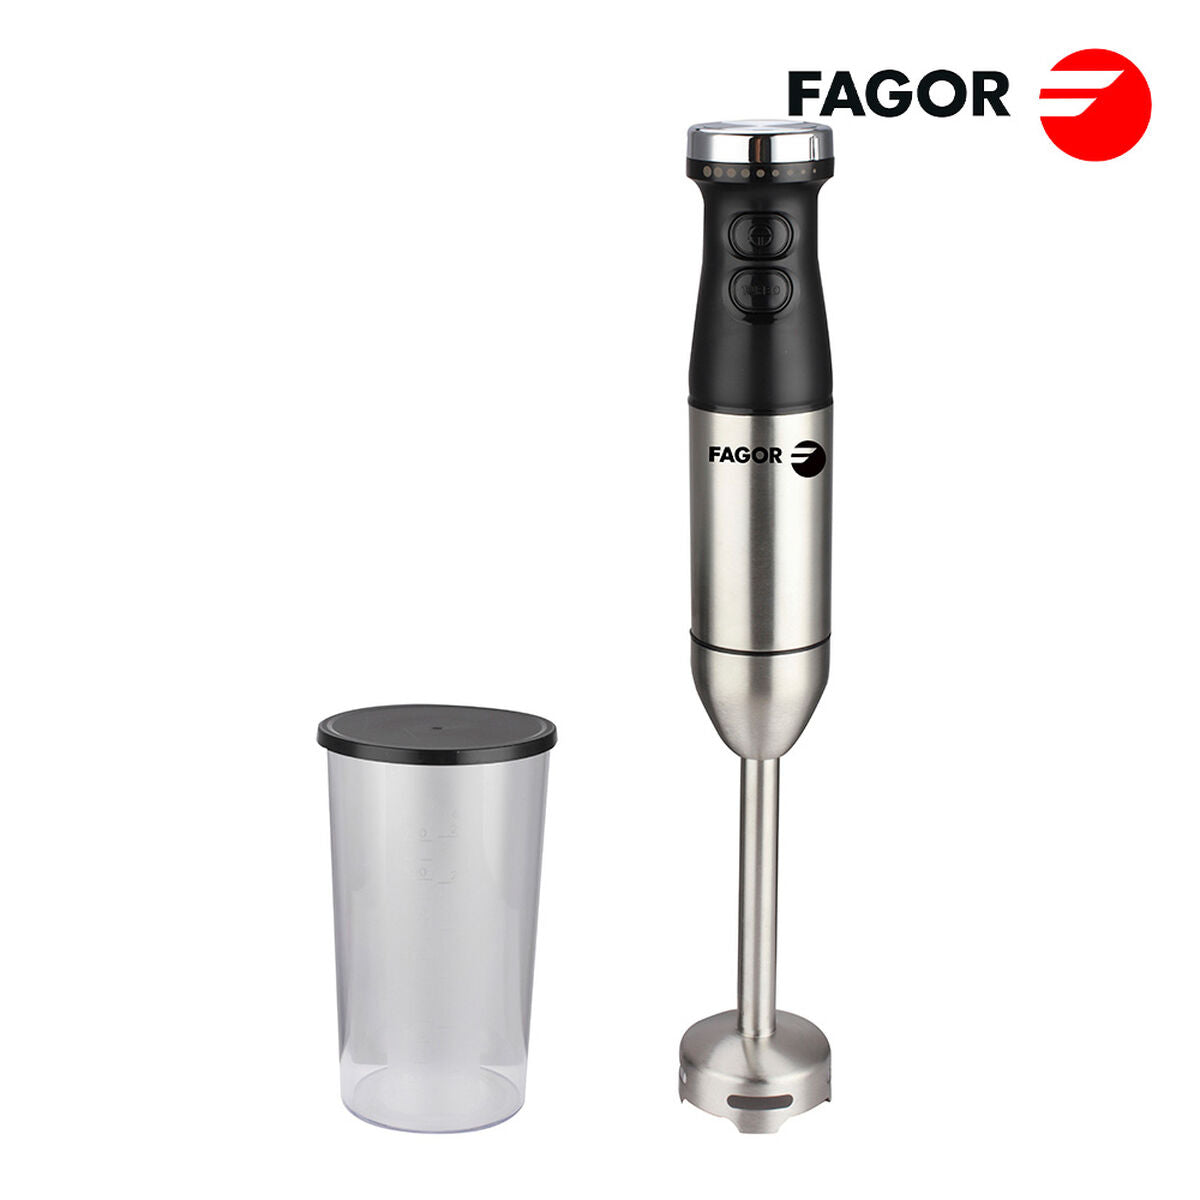 Handrührgerät FAGOR Silberfarben 800 W - CA International  